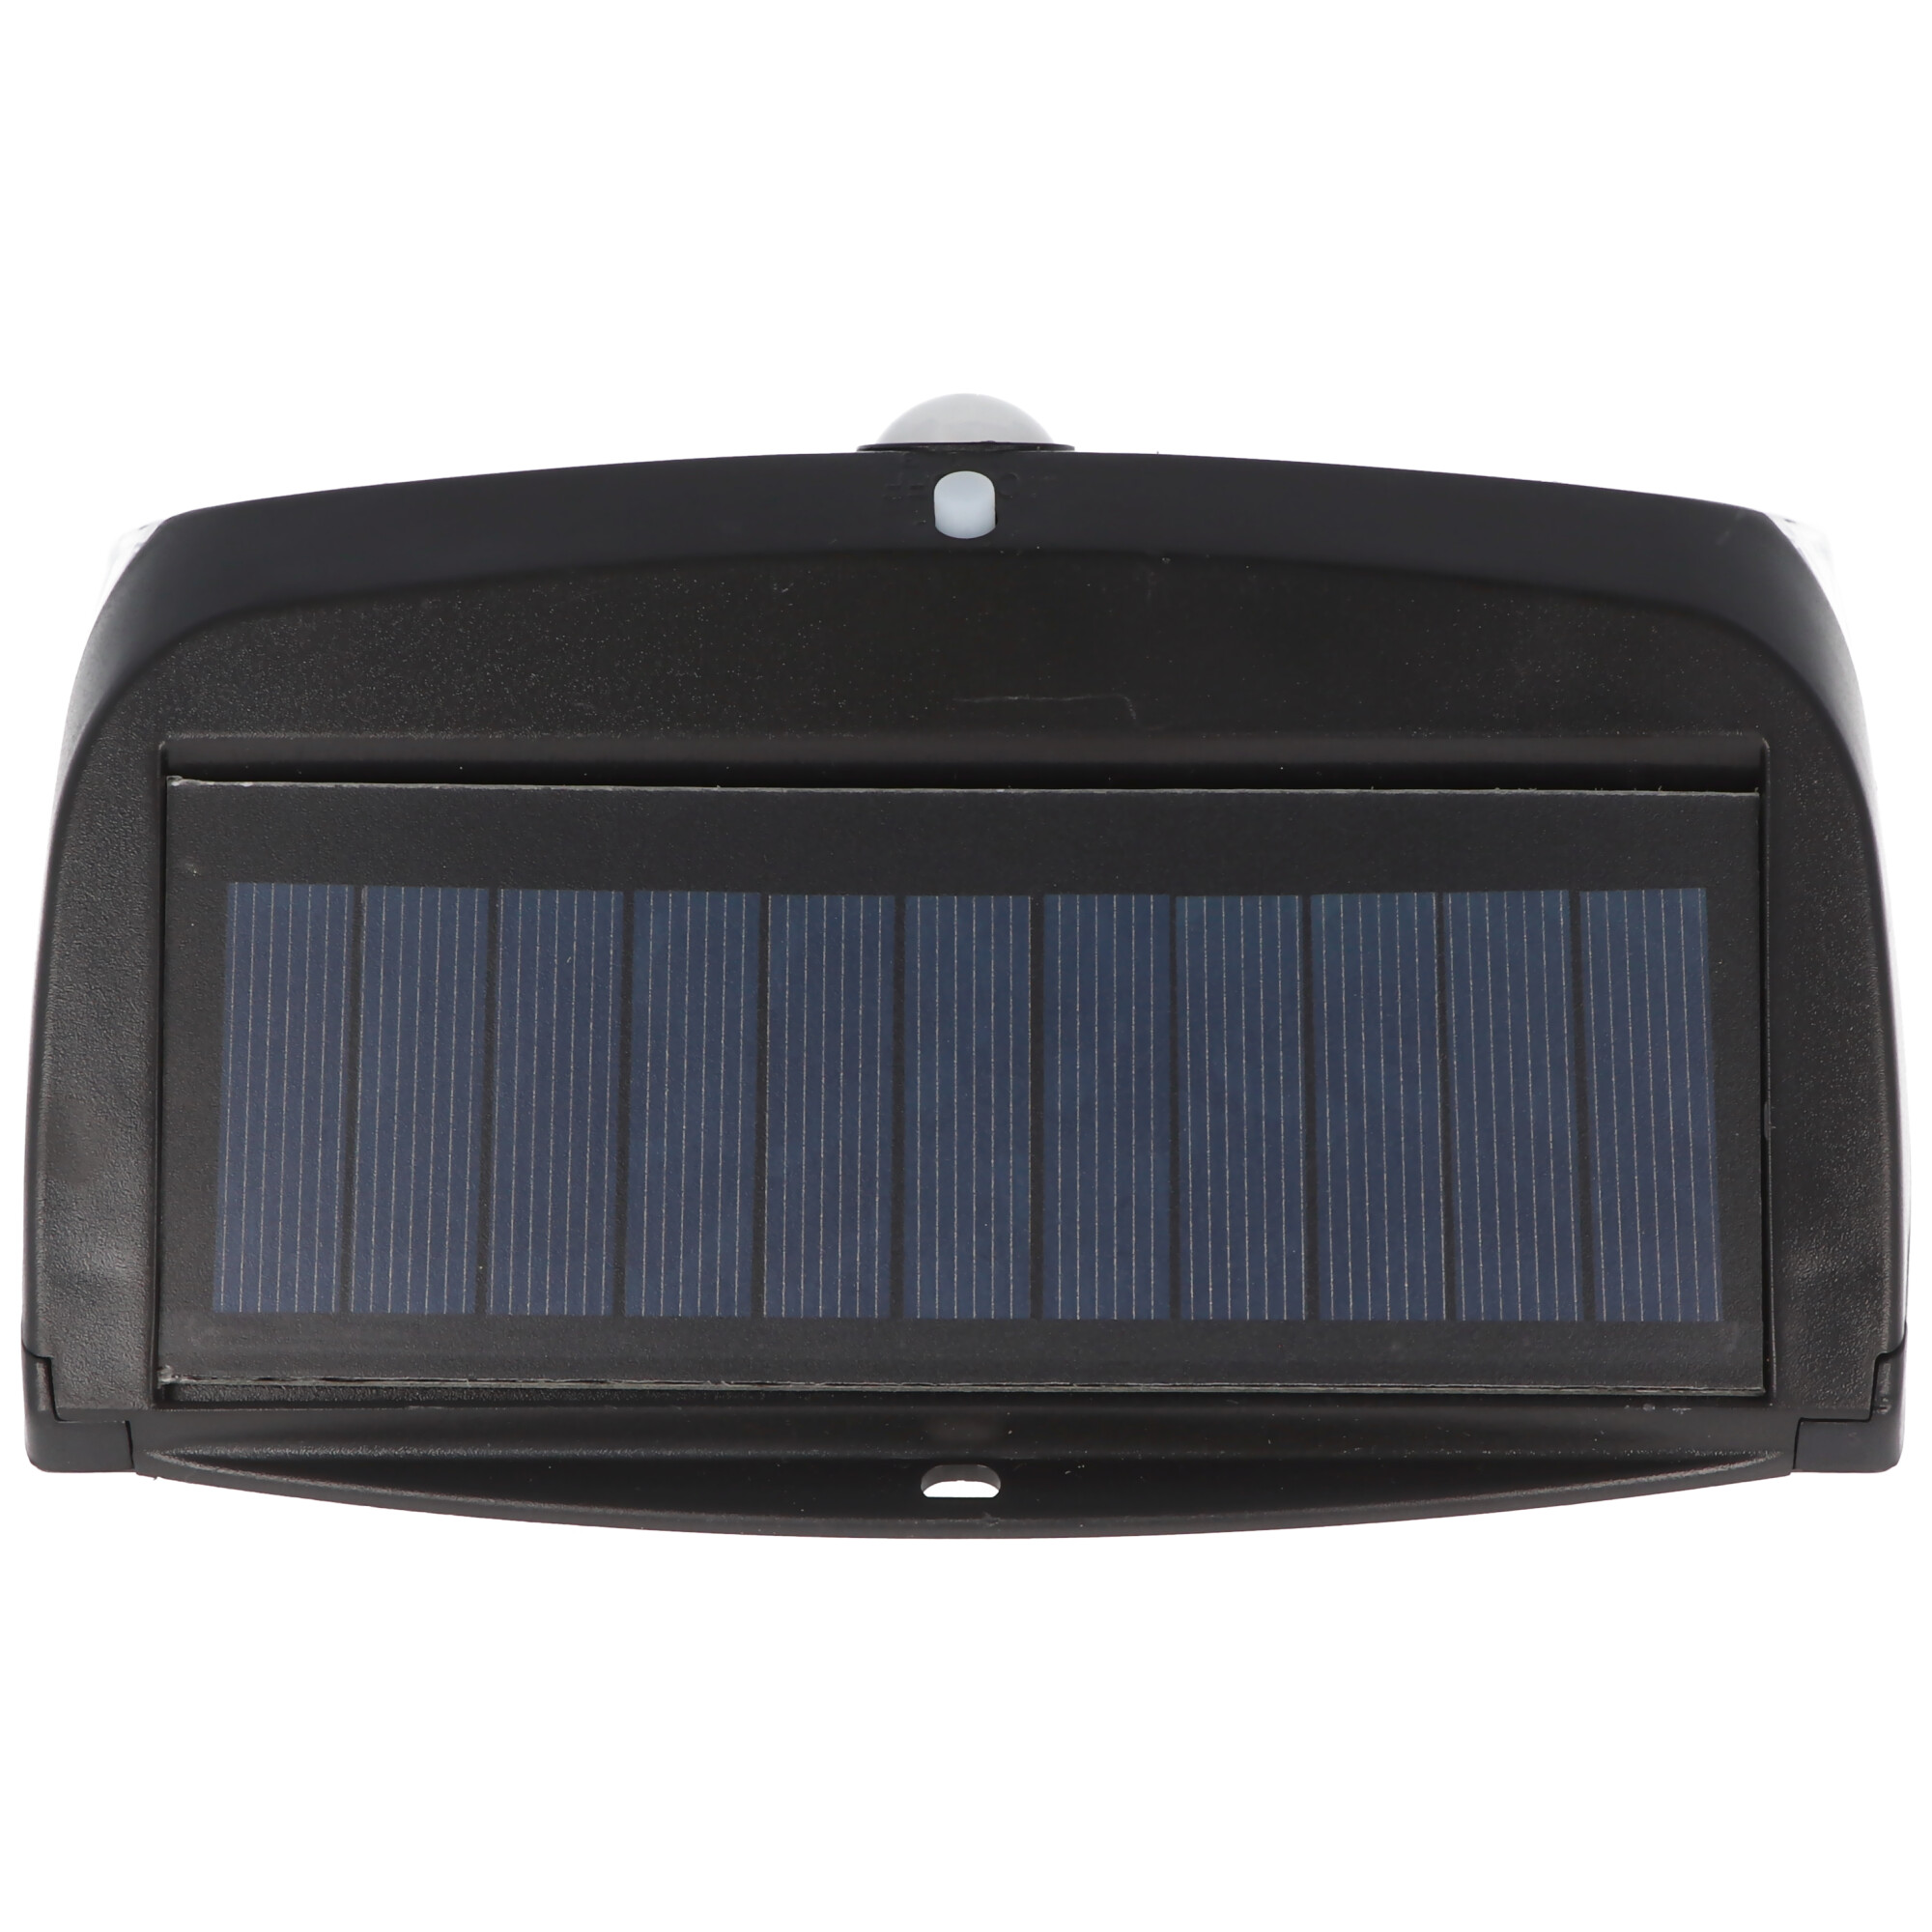 Wandlicht LED Solar Sicherheitslicht inklusive 18650 Li-ion Standard Akku 66,5x18mm, mit Solarpanel